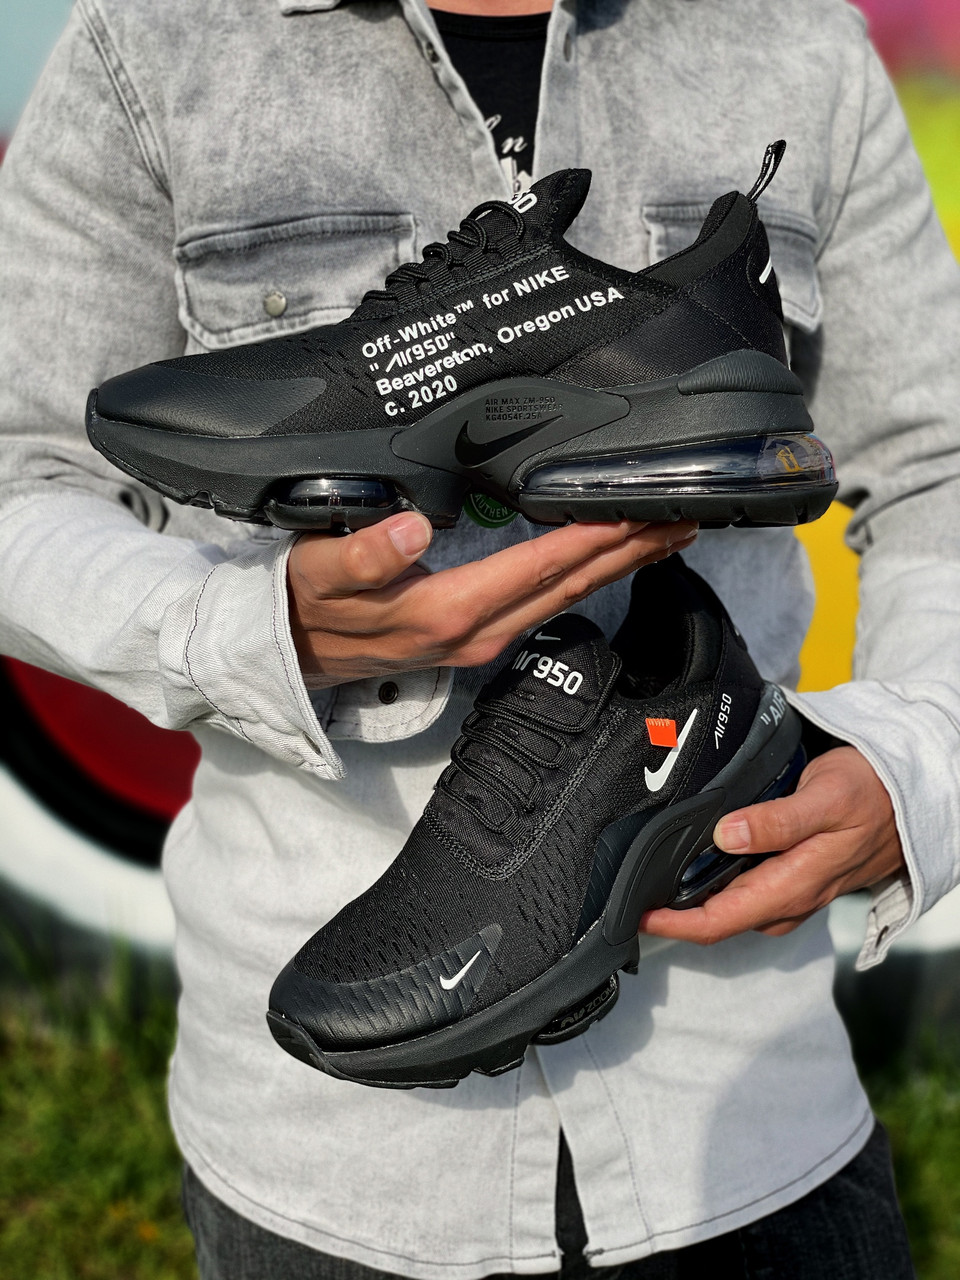 

Кроссовки мужские Nike Zoom 950 черные, Найк Зум 950, текстильные, код Z-3295 Да, 45, Черный